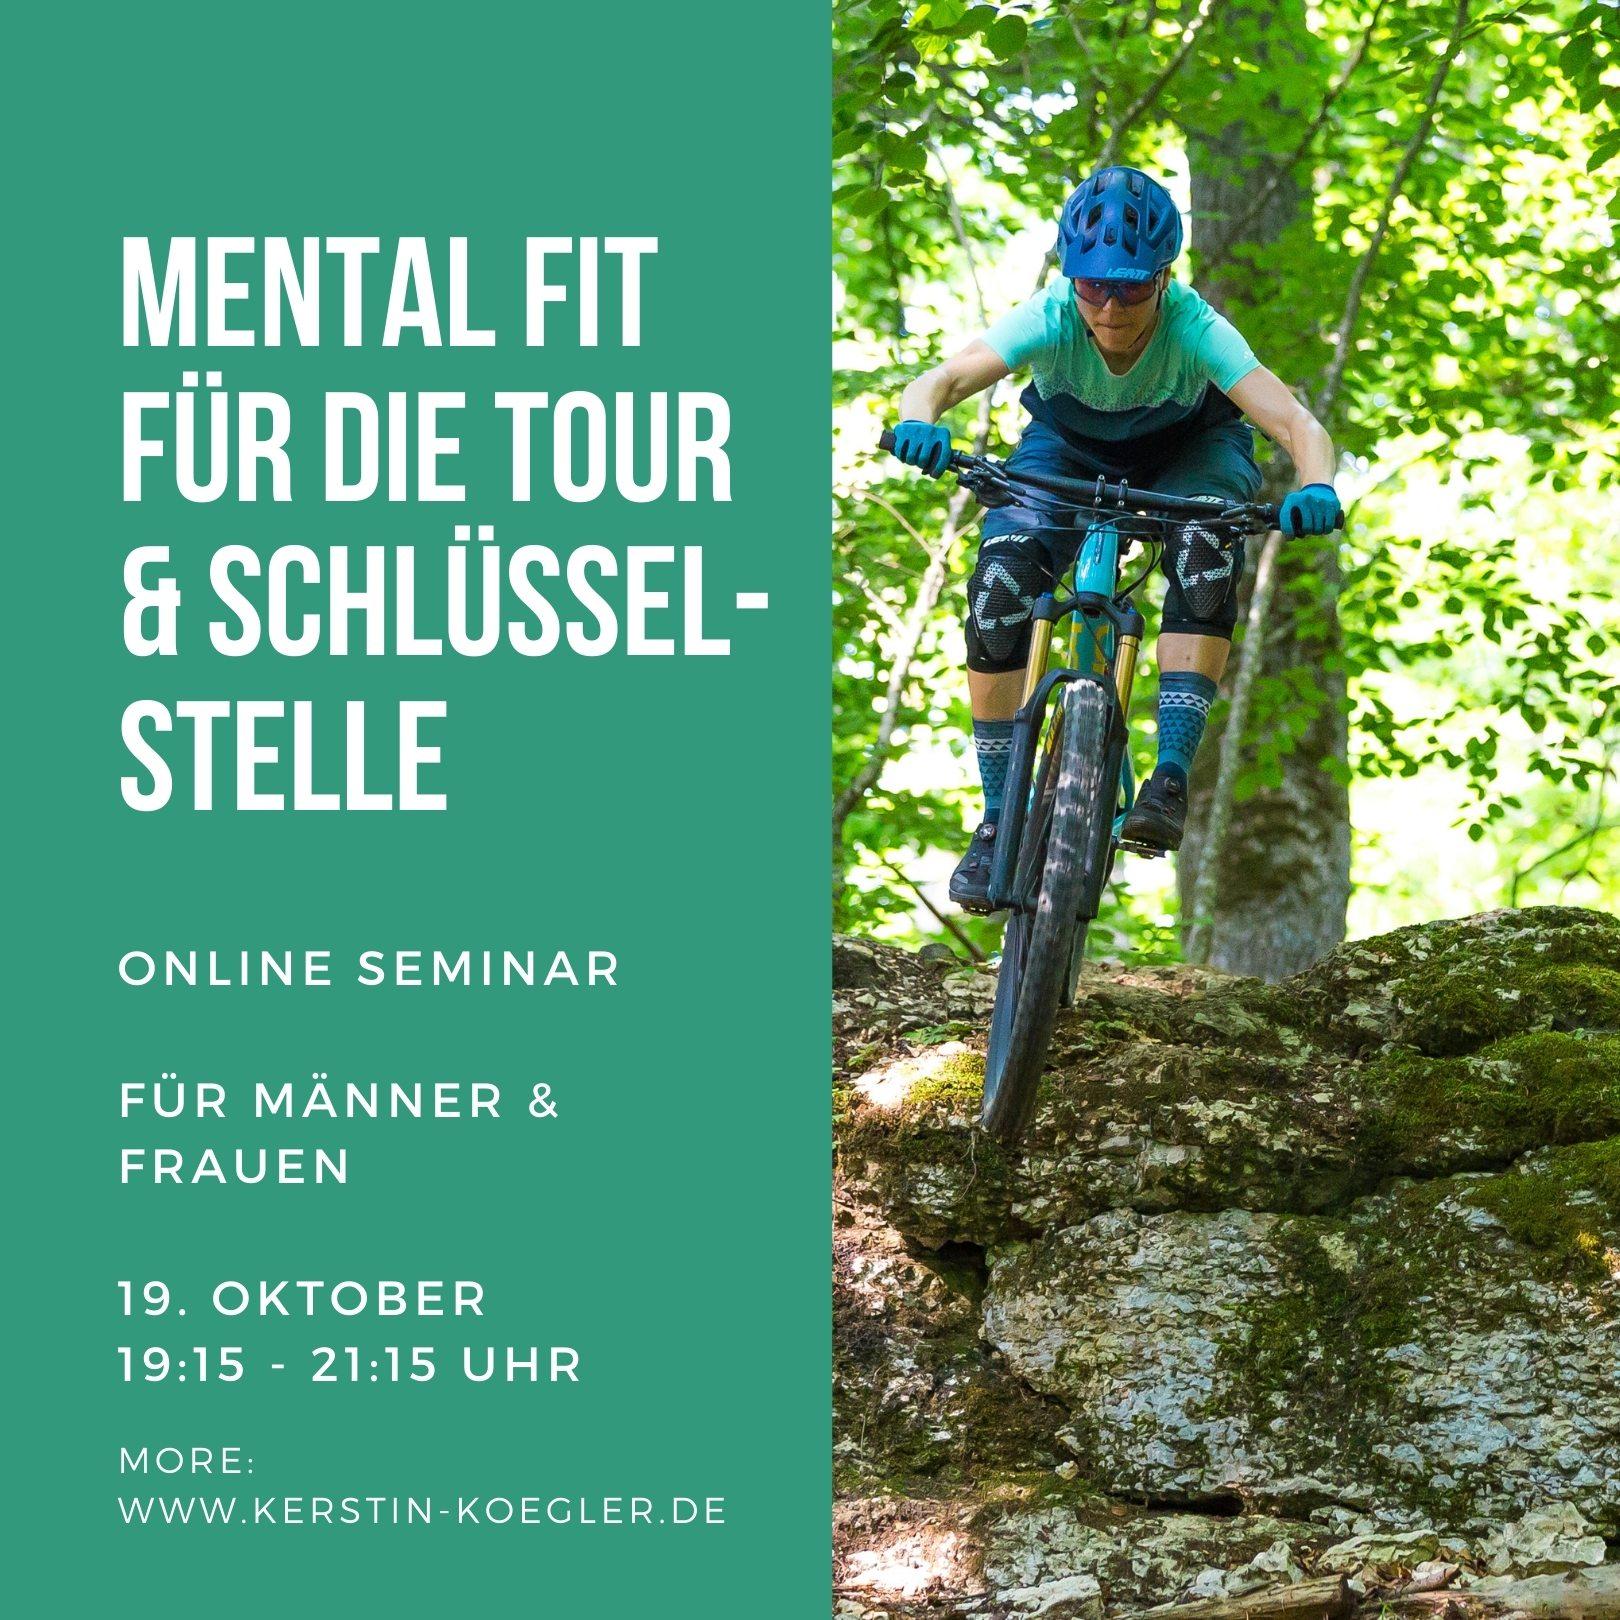 Mental fit für die Schlüsselstelle, Mentale Stärke, Kerstin Kögler auf dem Mountainbike